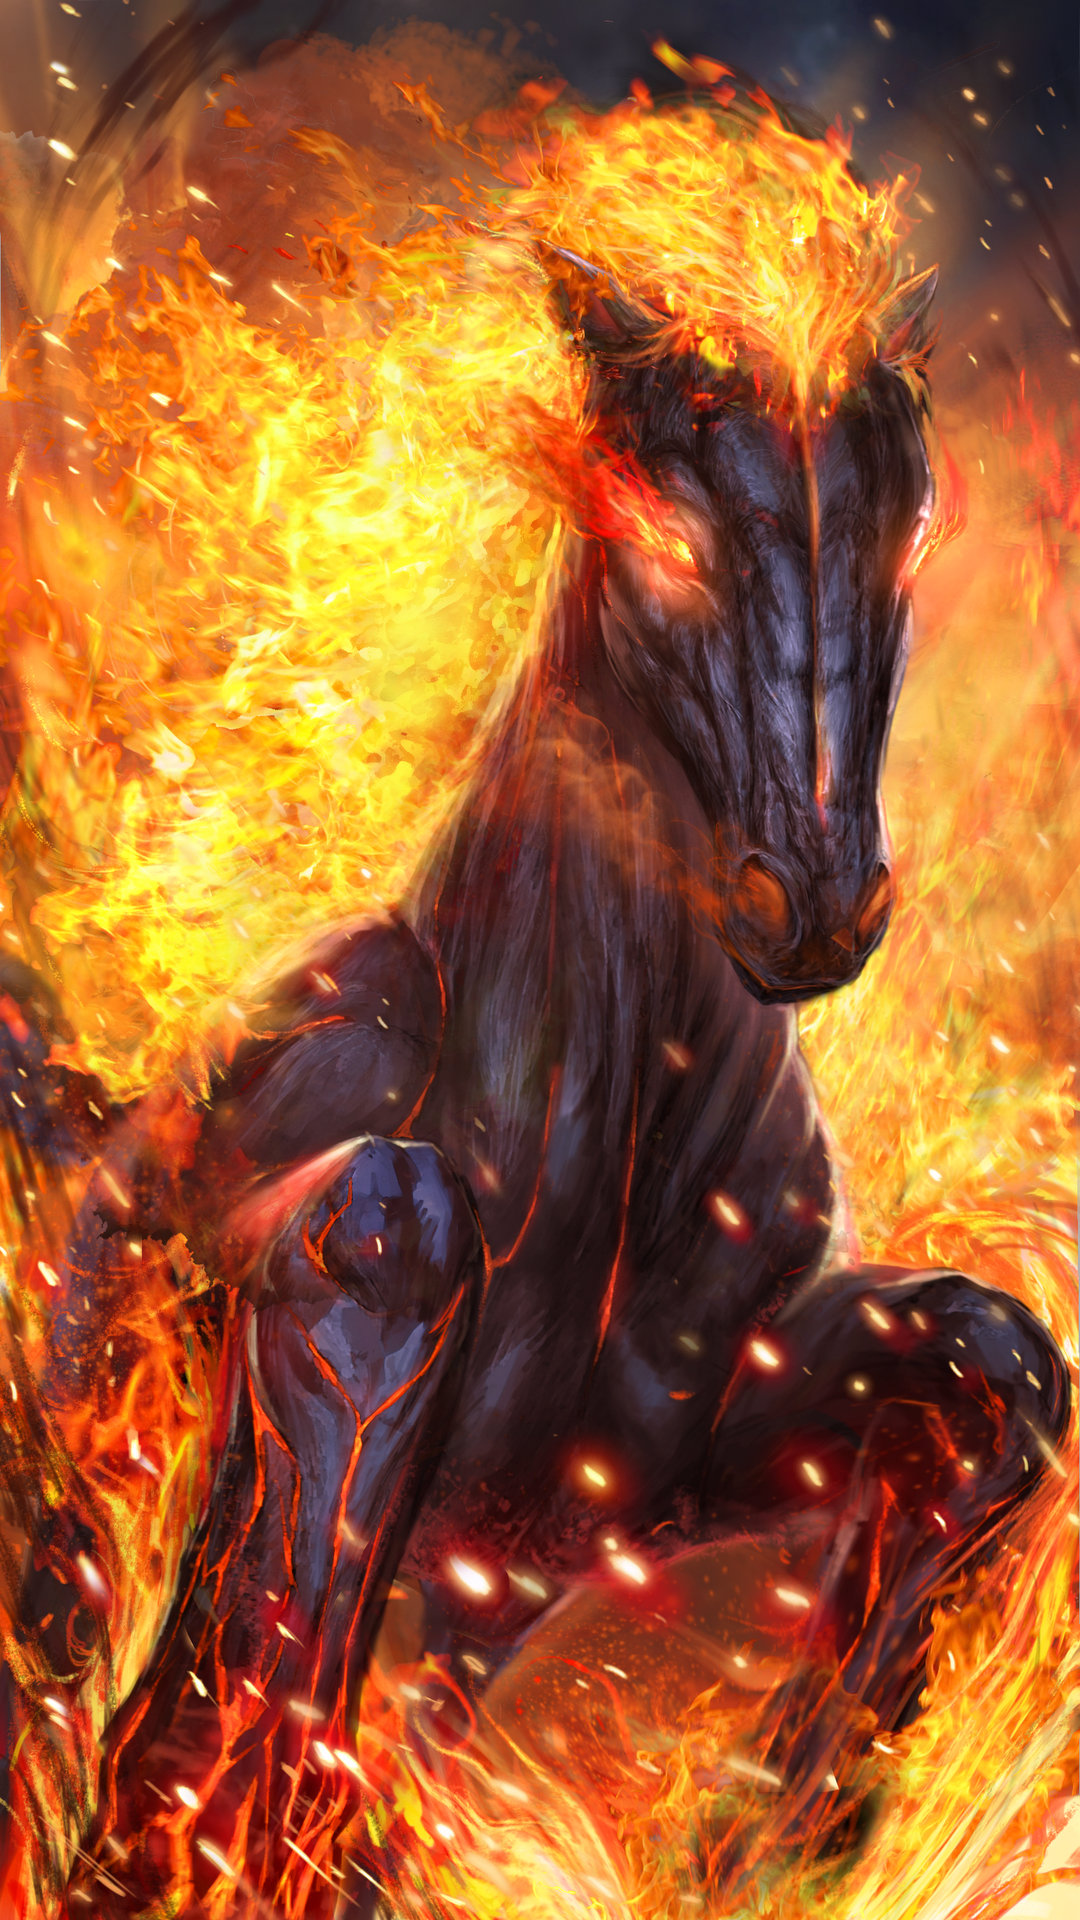 Fire Horse iPhone Wallpaper 